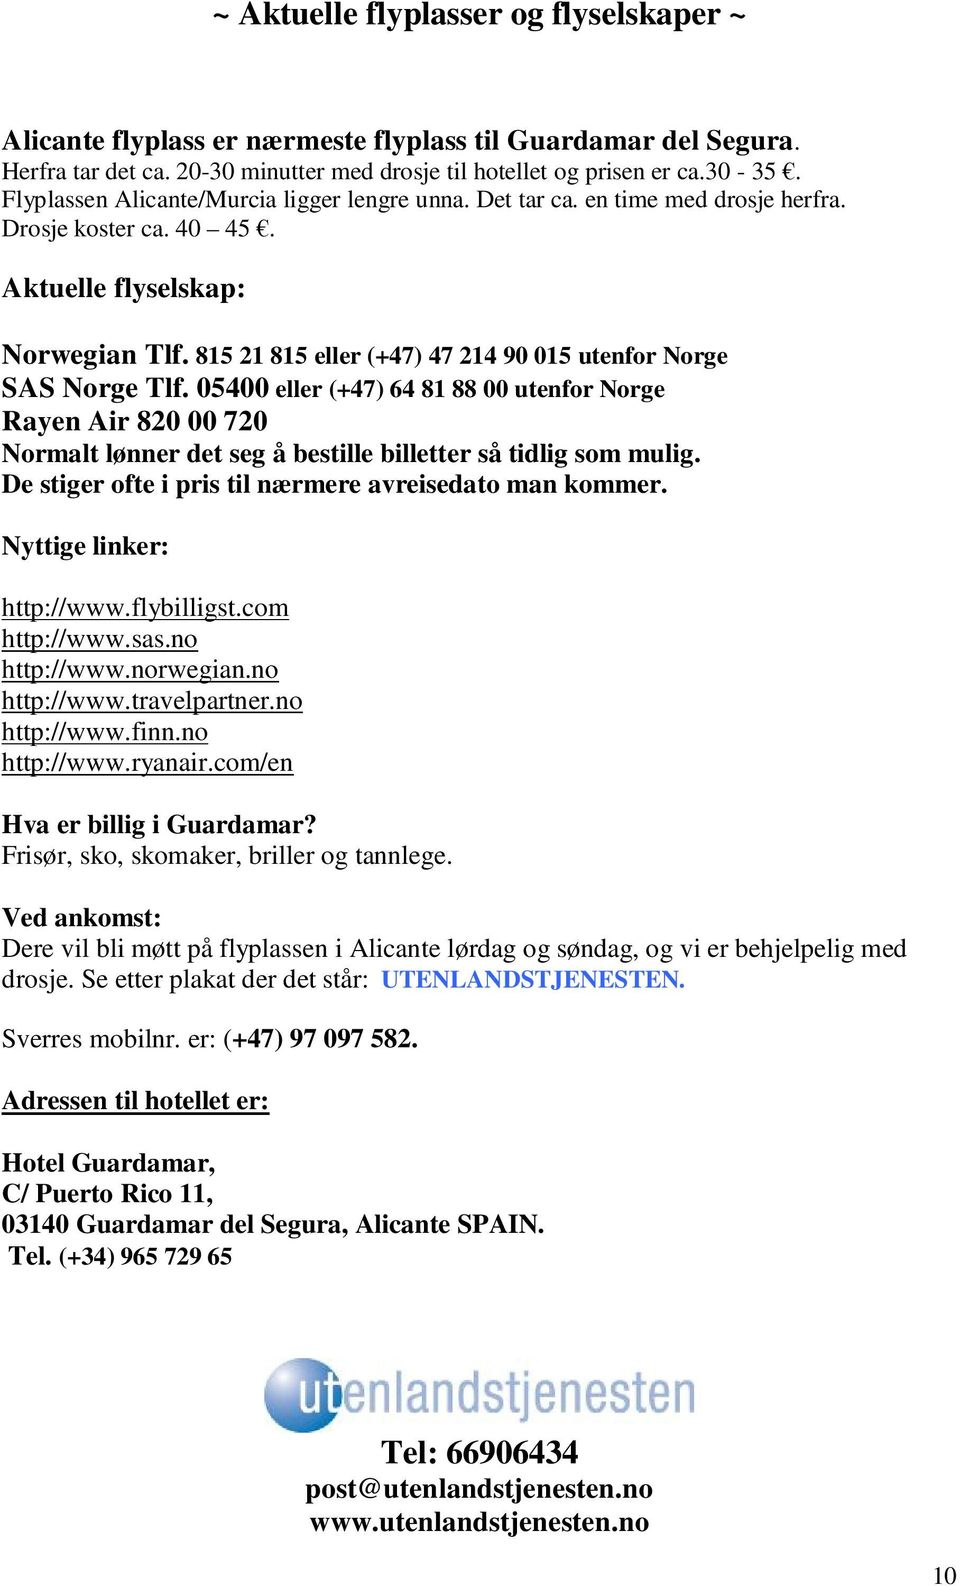 815 21 815 eller (+47) 47 214 90 015 utenfor Norge SAS Norge Tlf. 05400 eller (+47) 64 81 88 00 utenfor Norge Rayen Air 820 00 720 Normalt lønner det seg å bestille billetter så tidlig som mulig.